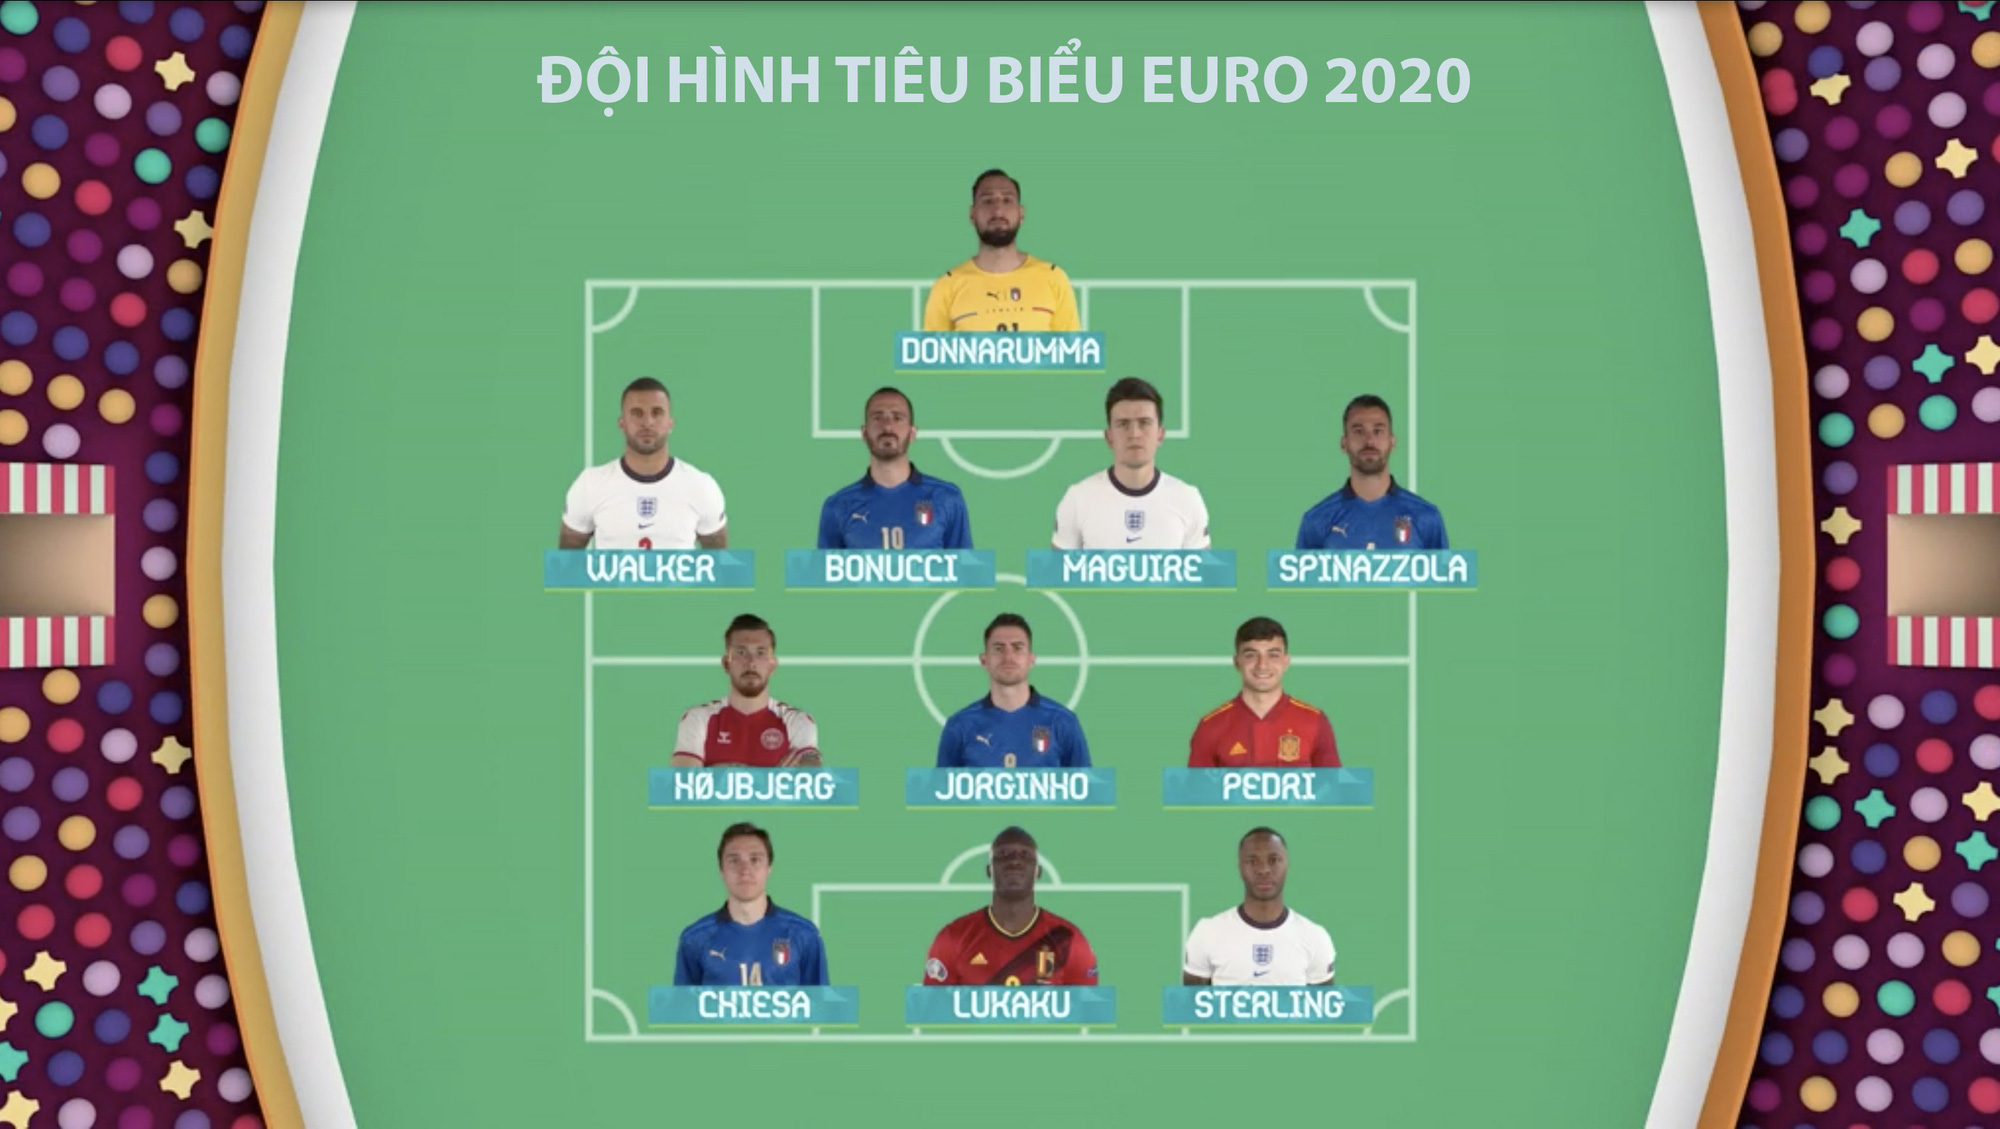 Bất ngờ đội hình tiêu biểu EURO 2020 do UEFA công bố  Báo Giáo dục và Thời  đại Online